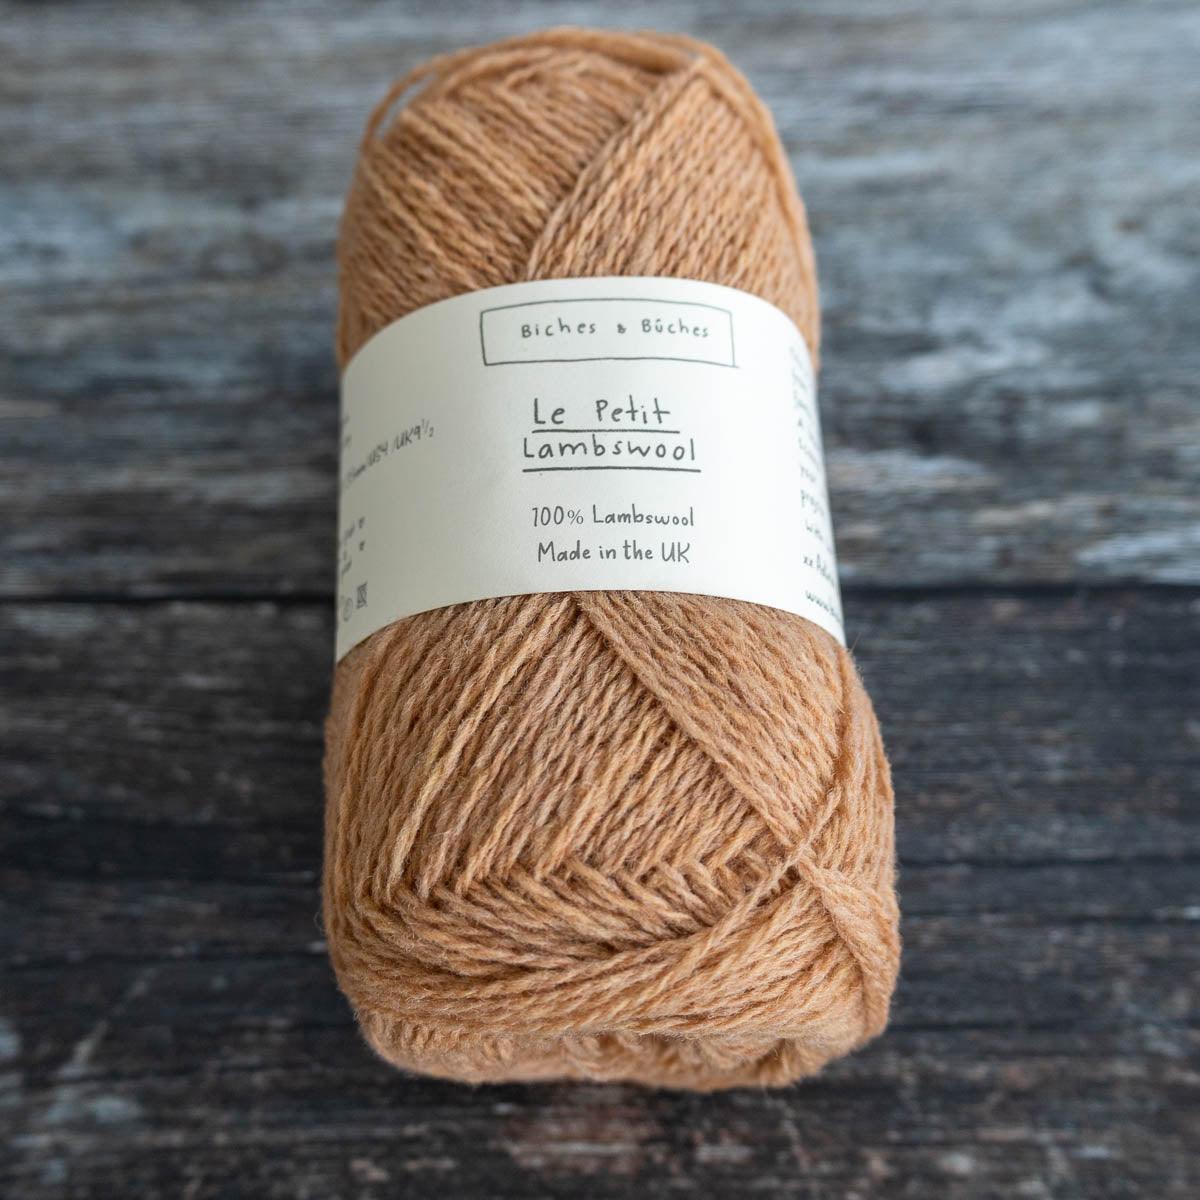 Biches & Bûches Biches & Bûches Le Petit Lambswool - Medium Peach - 4ply Knitting Yarn